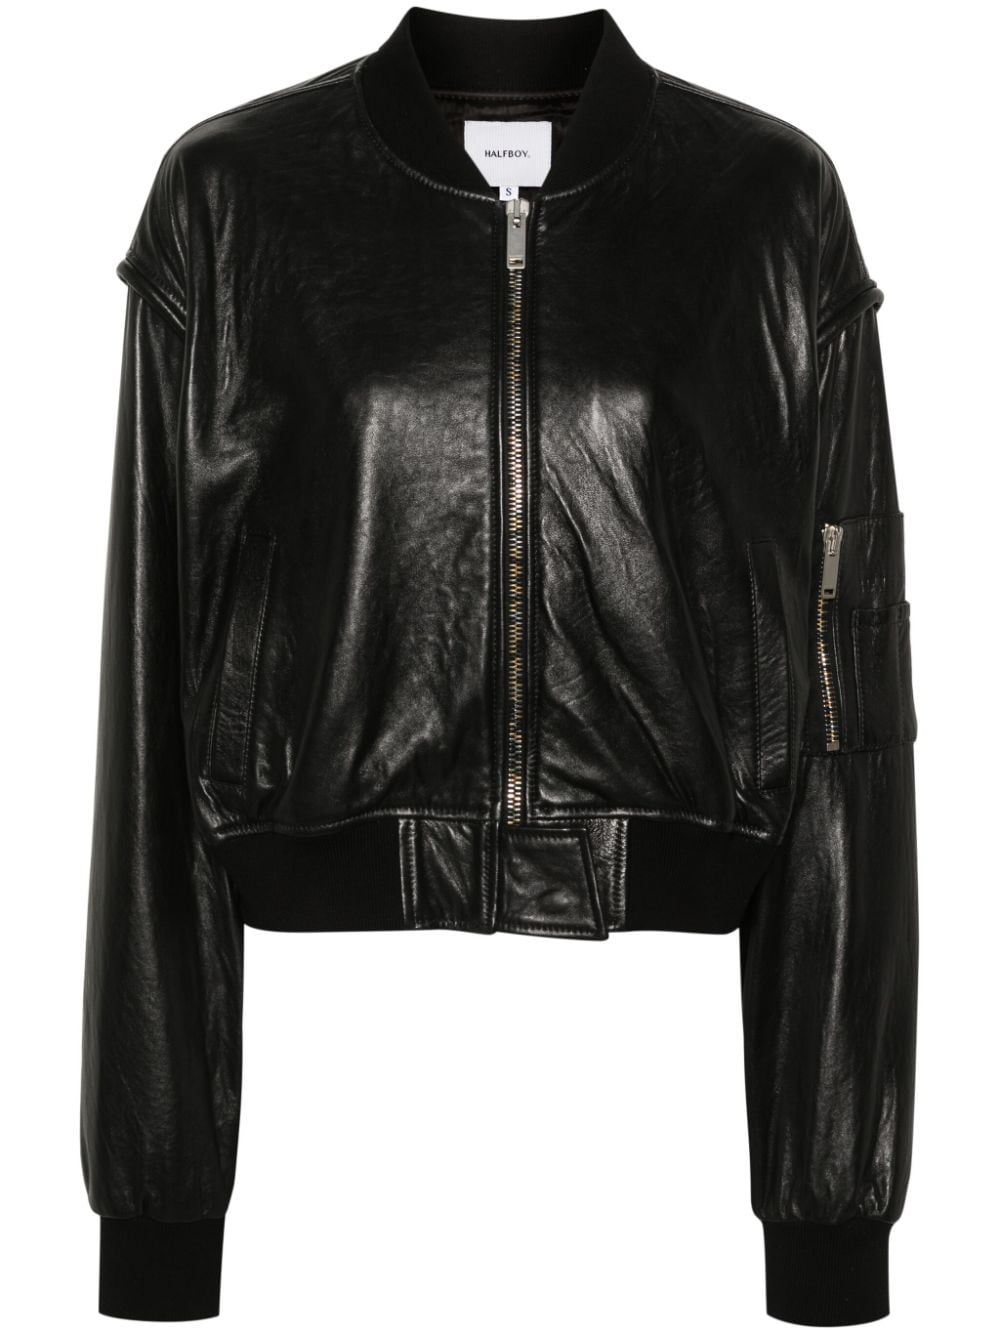 Halfboy leather bomber jacket - Black von Halfboy